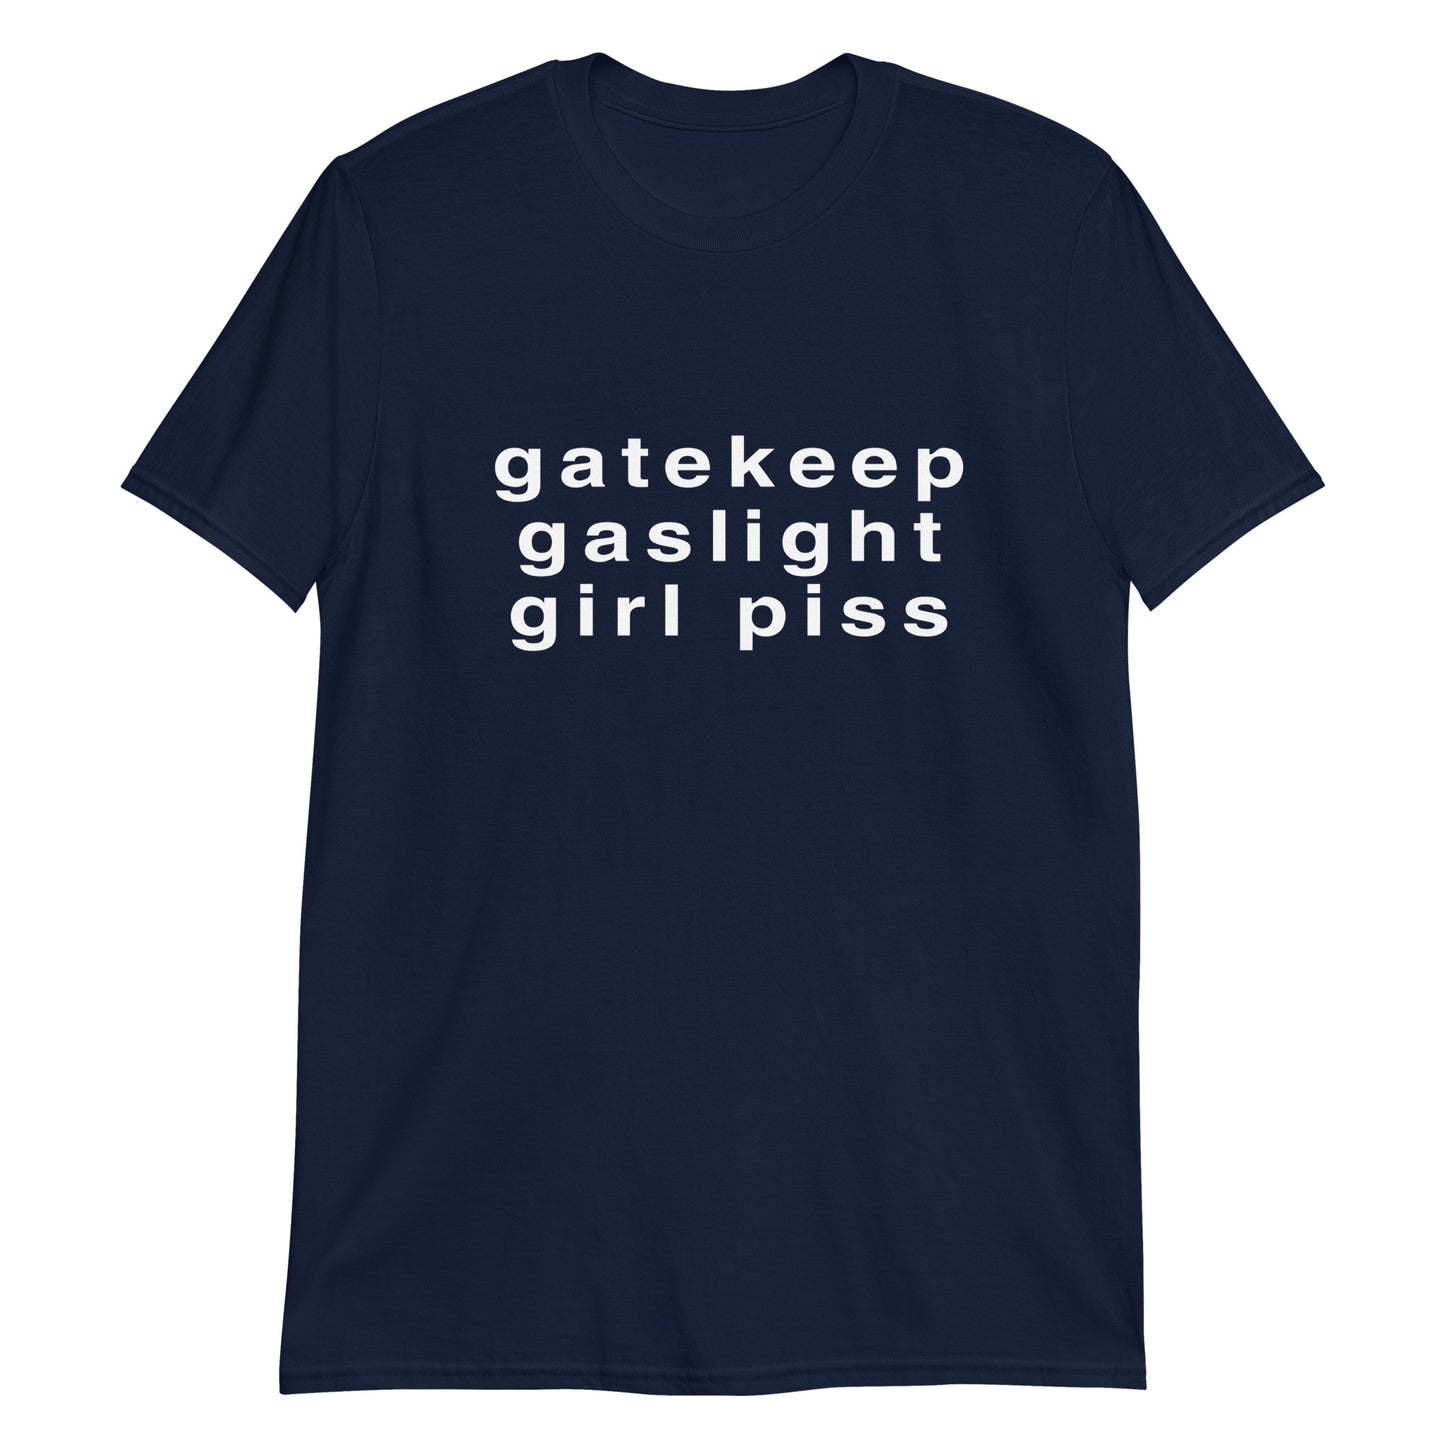 Gatekeep, Gaslight, Girlpiss